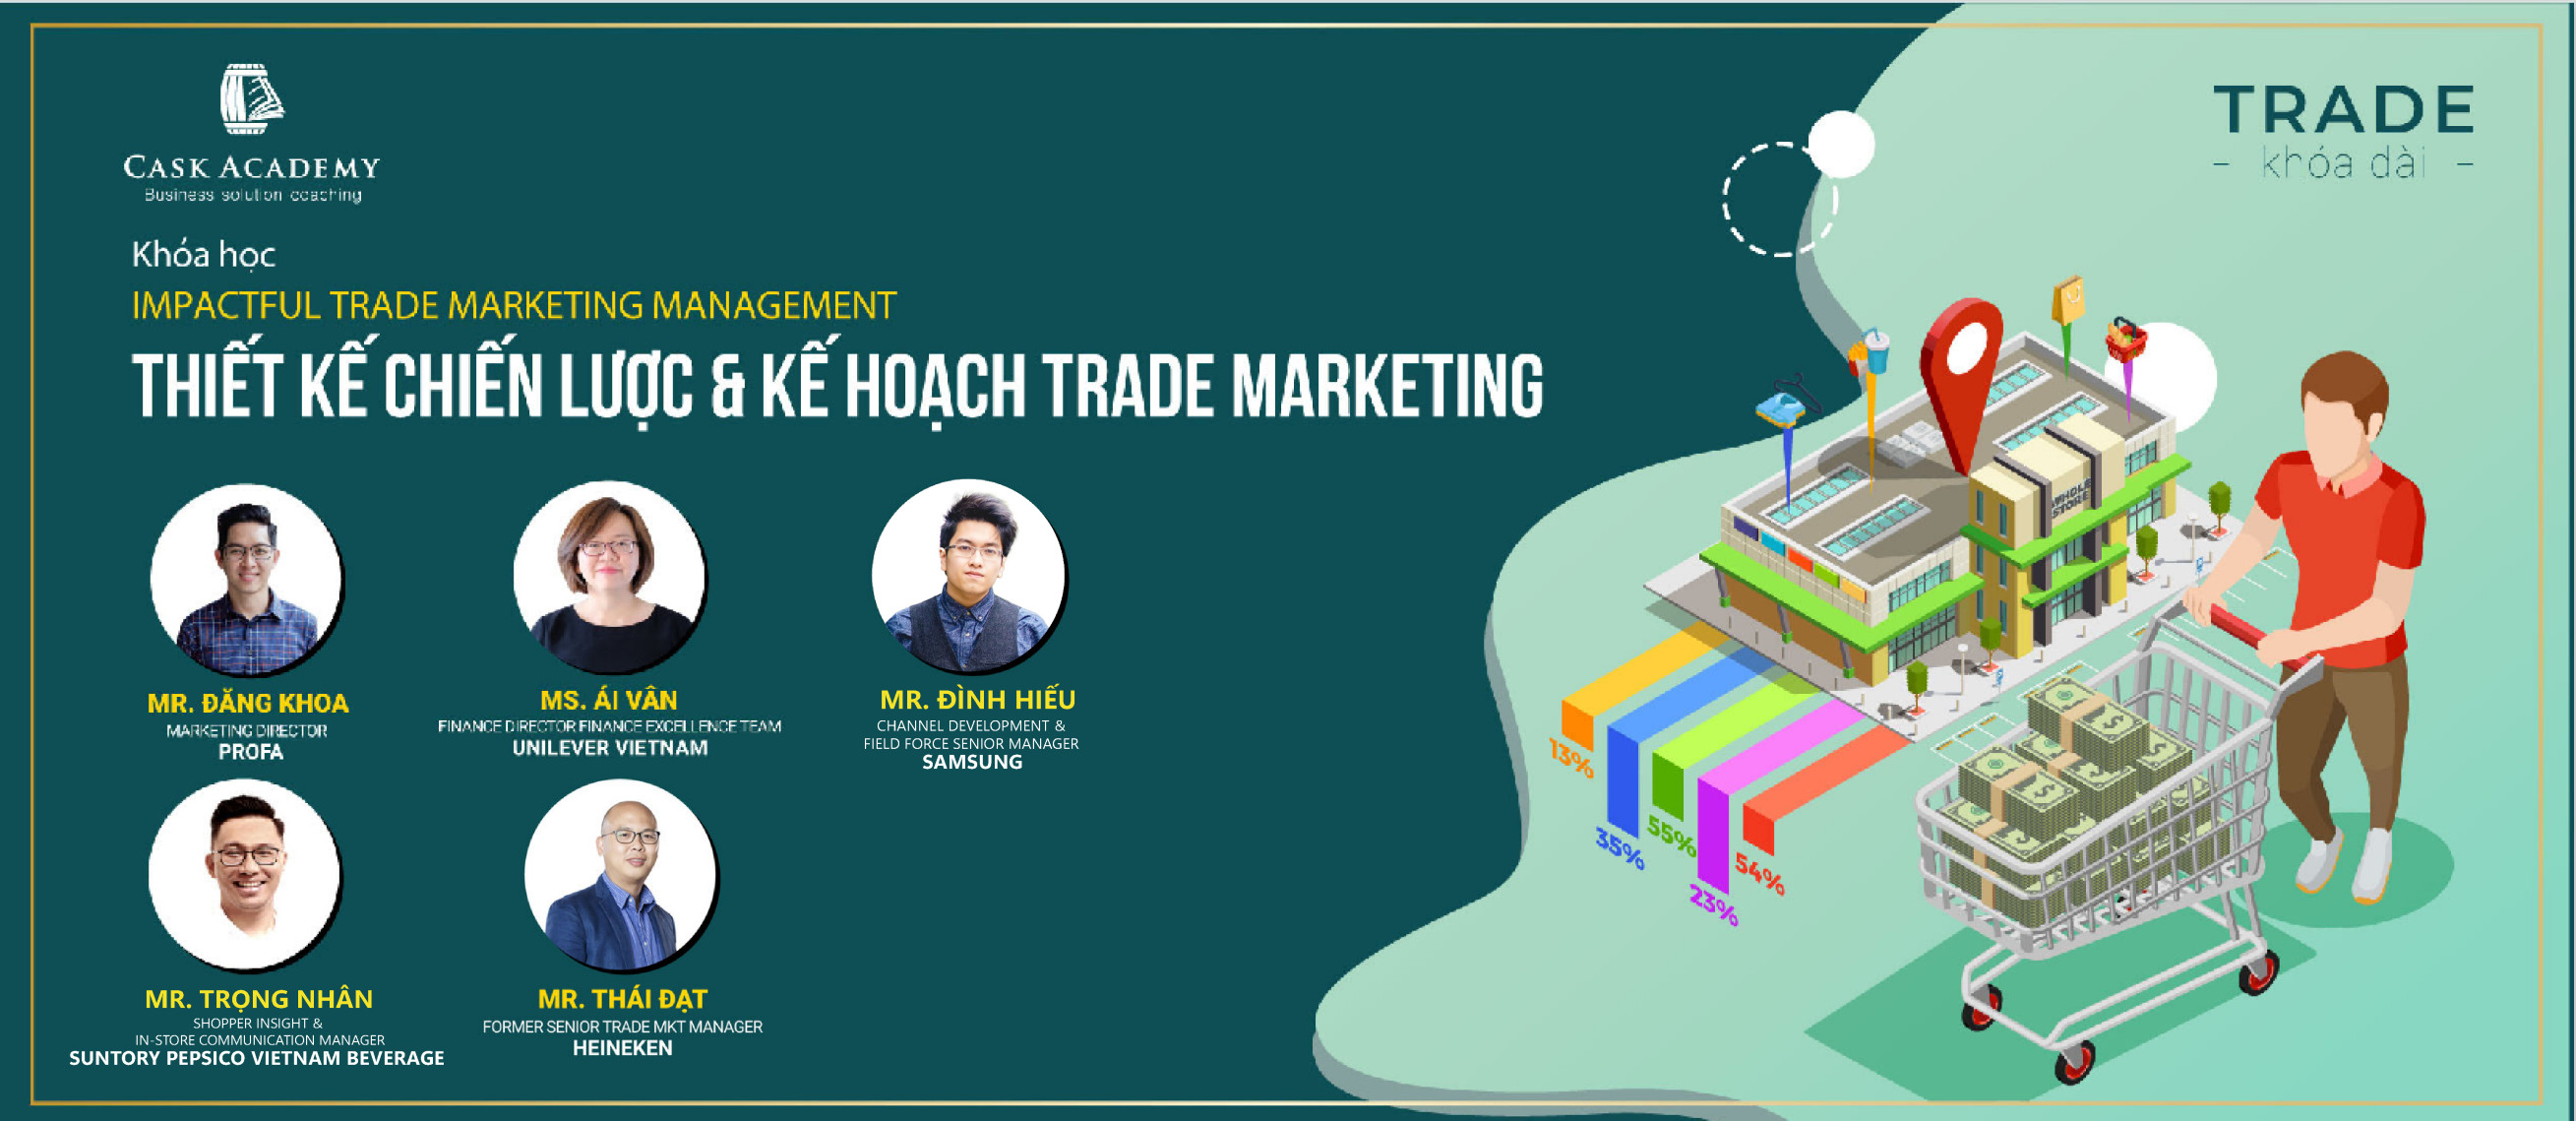 Thiết kế chiến lược & kế hoạch Trade Marketing